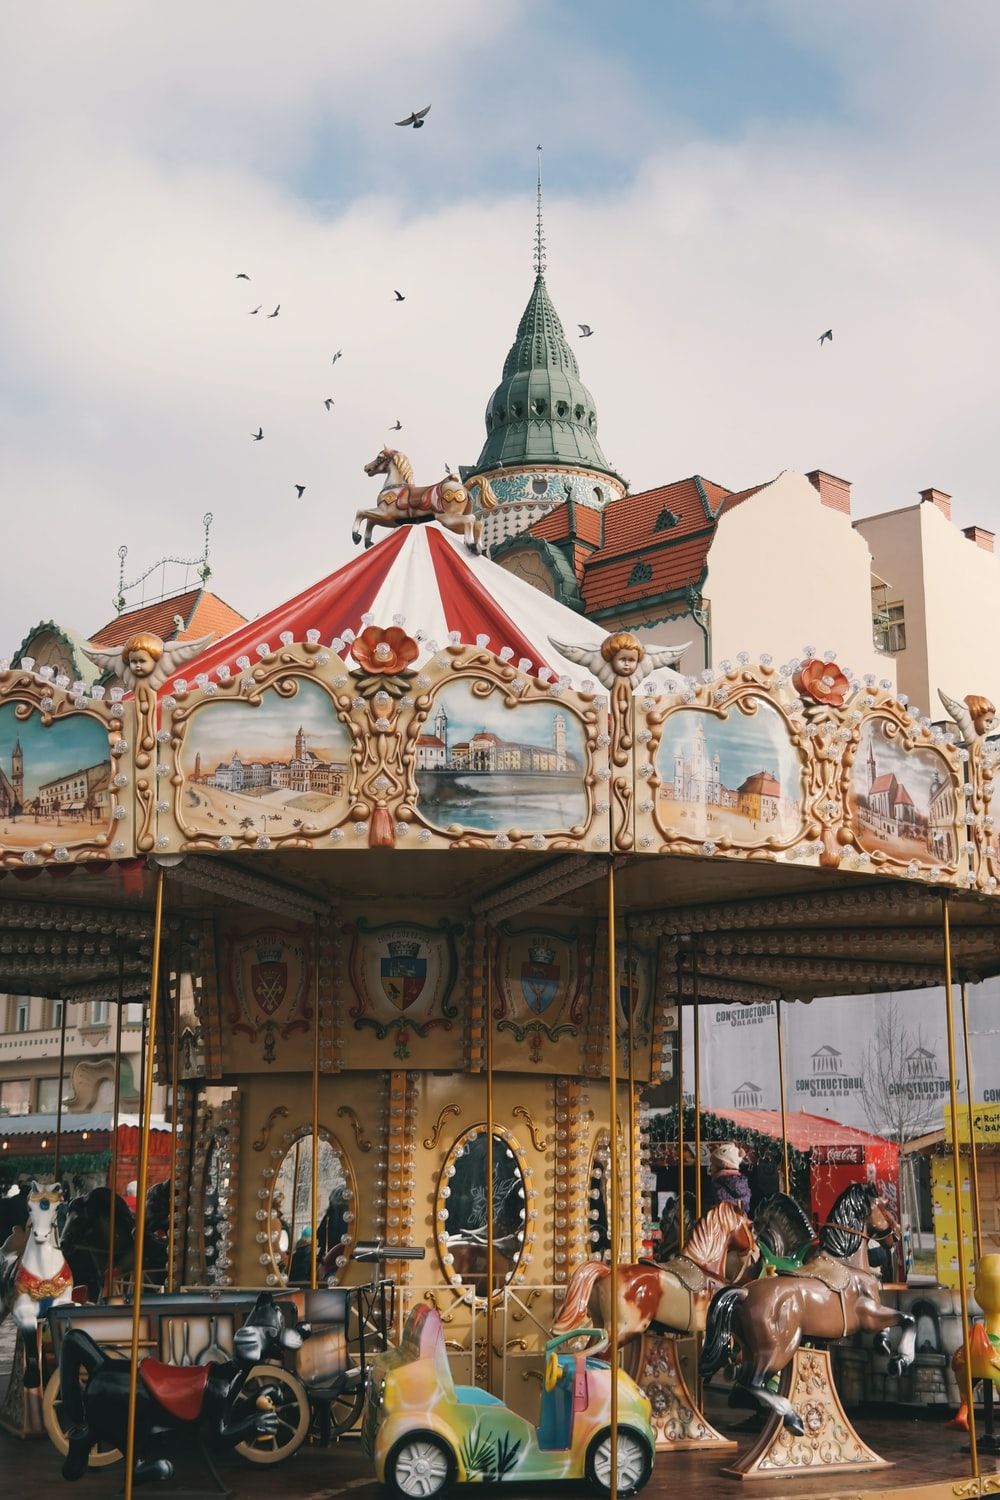 Amusement Park Picture. Download Free Image